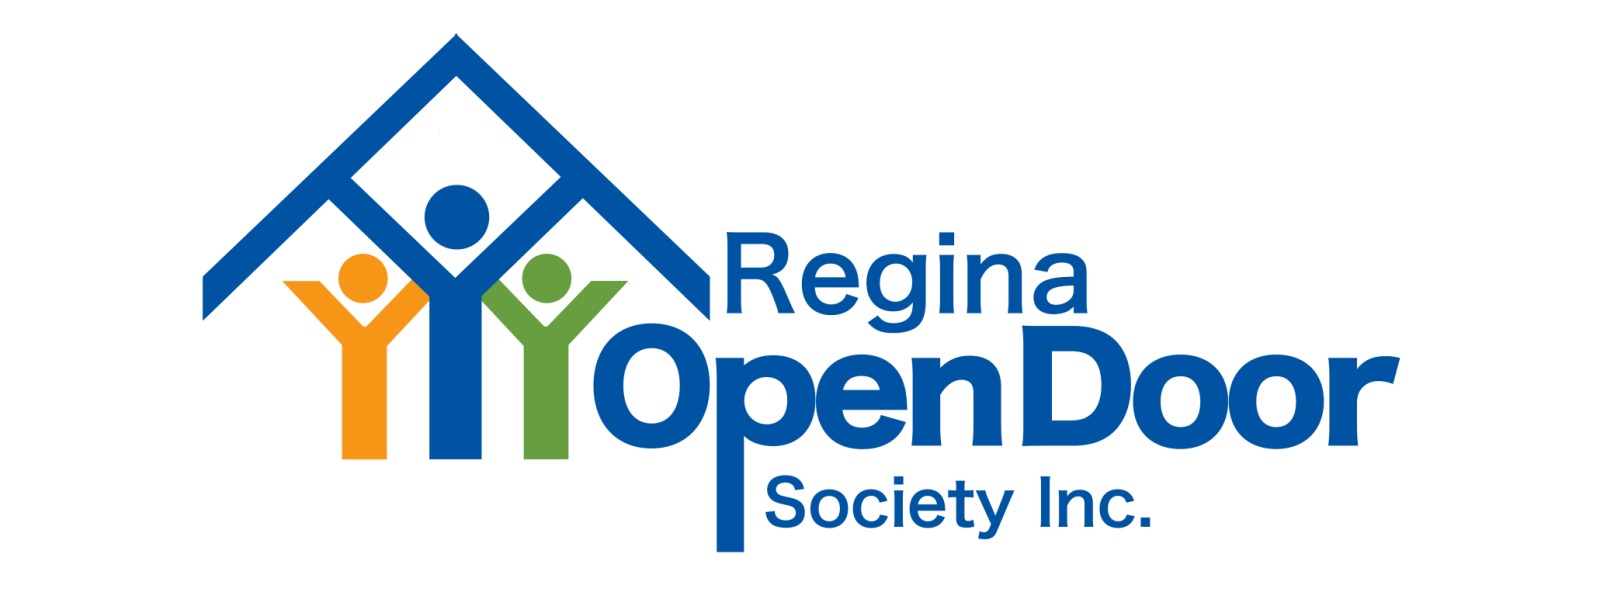 ALiGN Network - OTEC and Regina Open Door Society